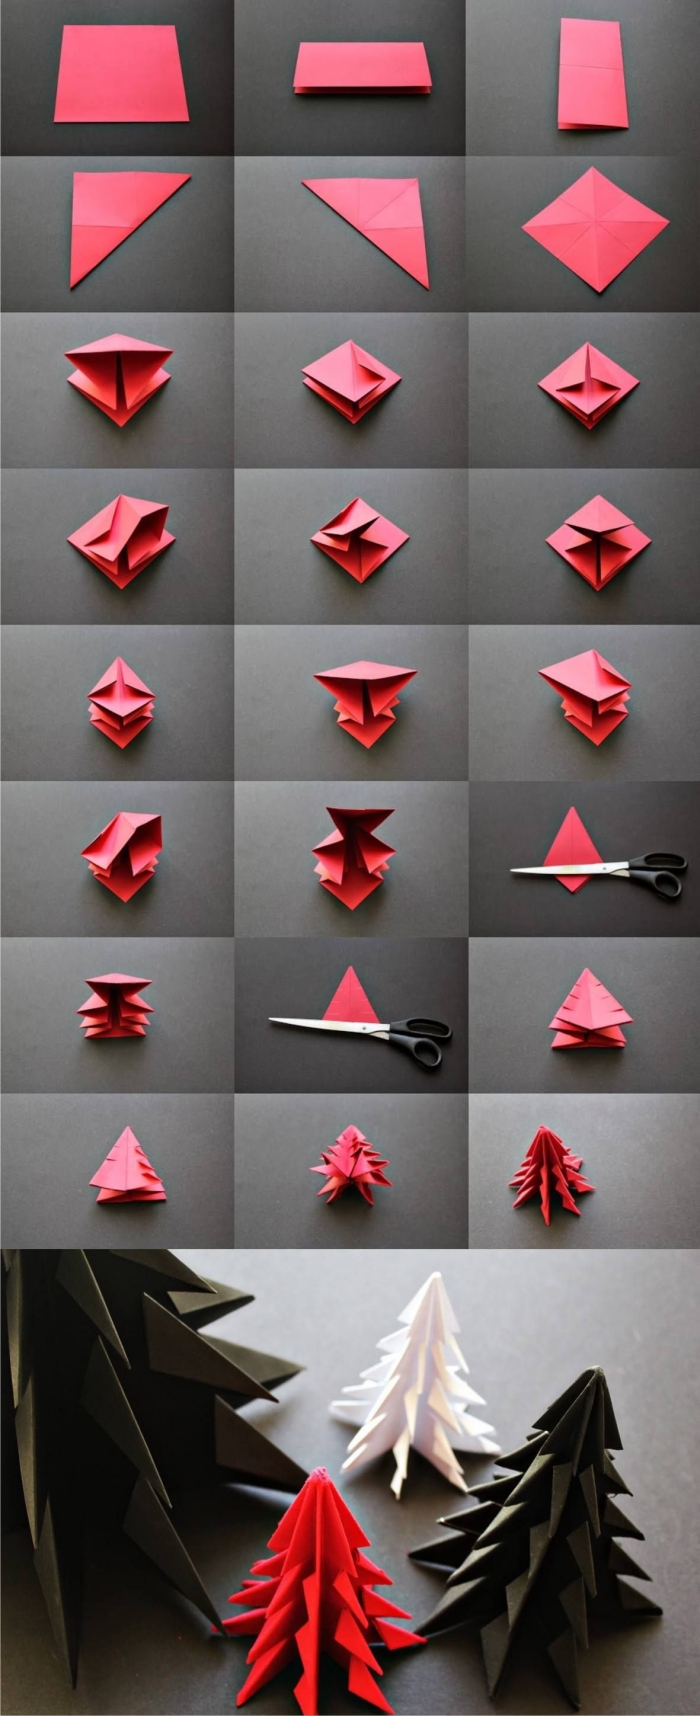 les étapes de pliage pour faire un mini sapin origami qui décorera joliment un centre de table ou une étagère